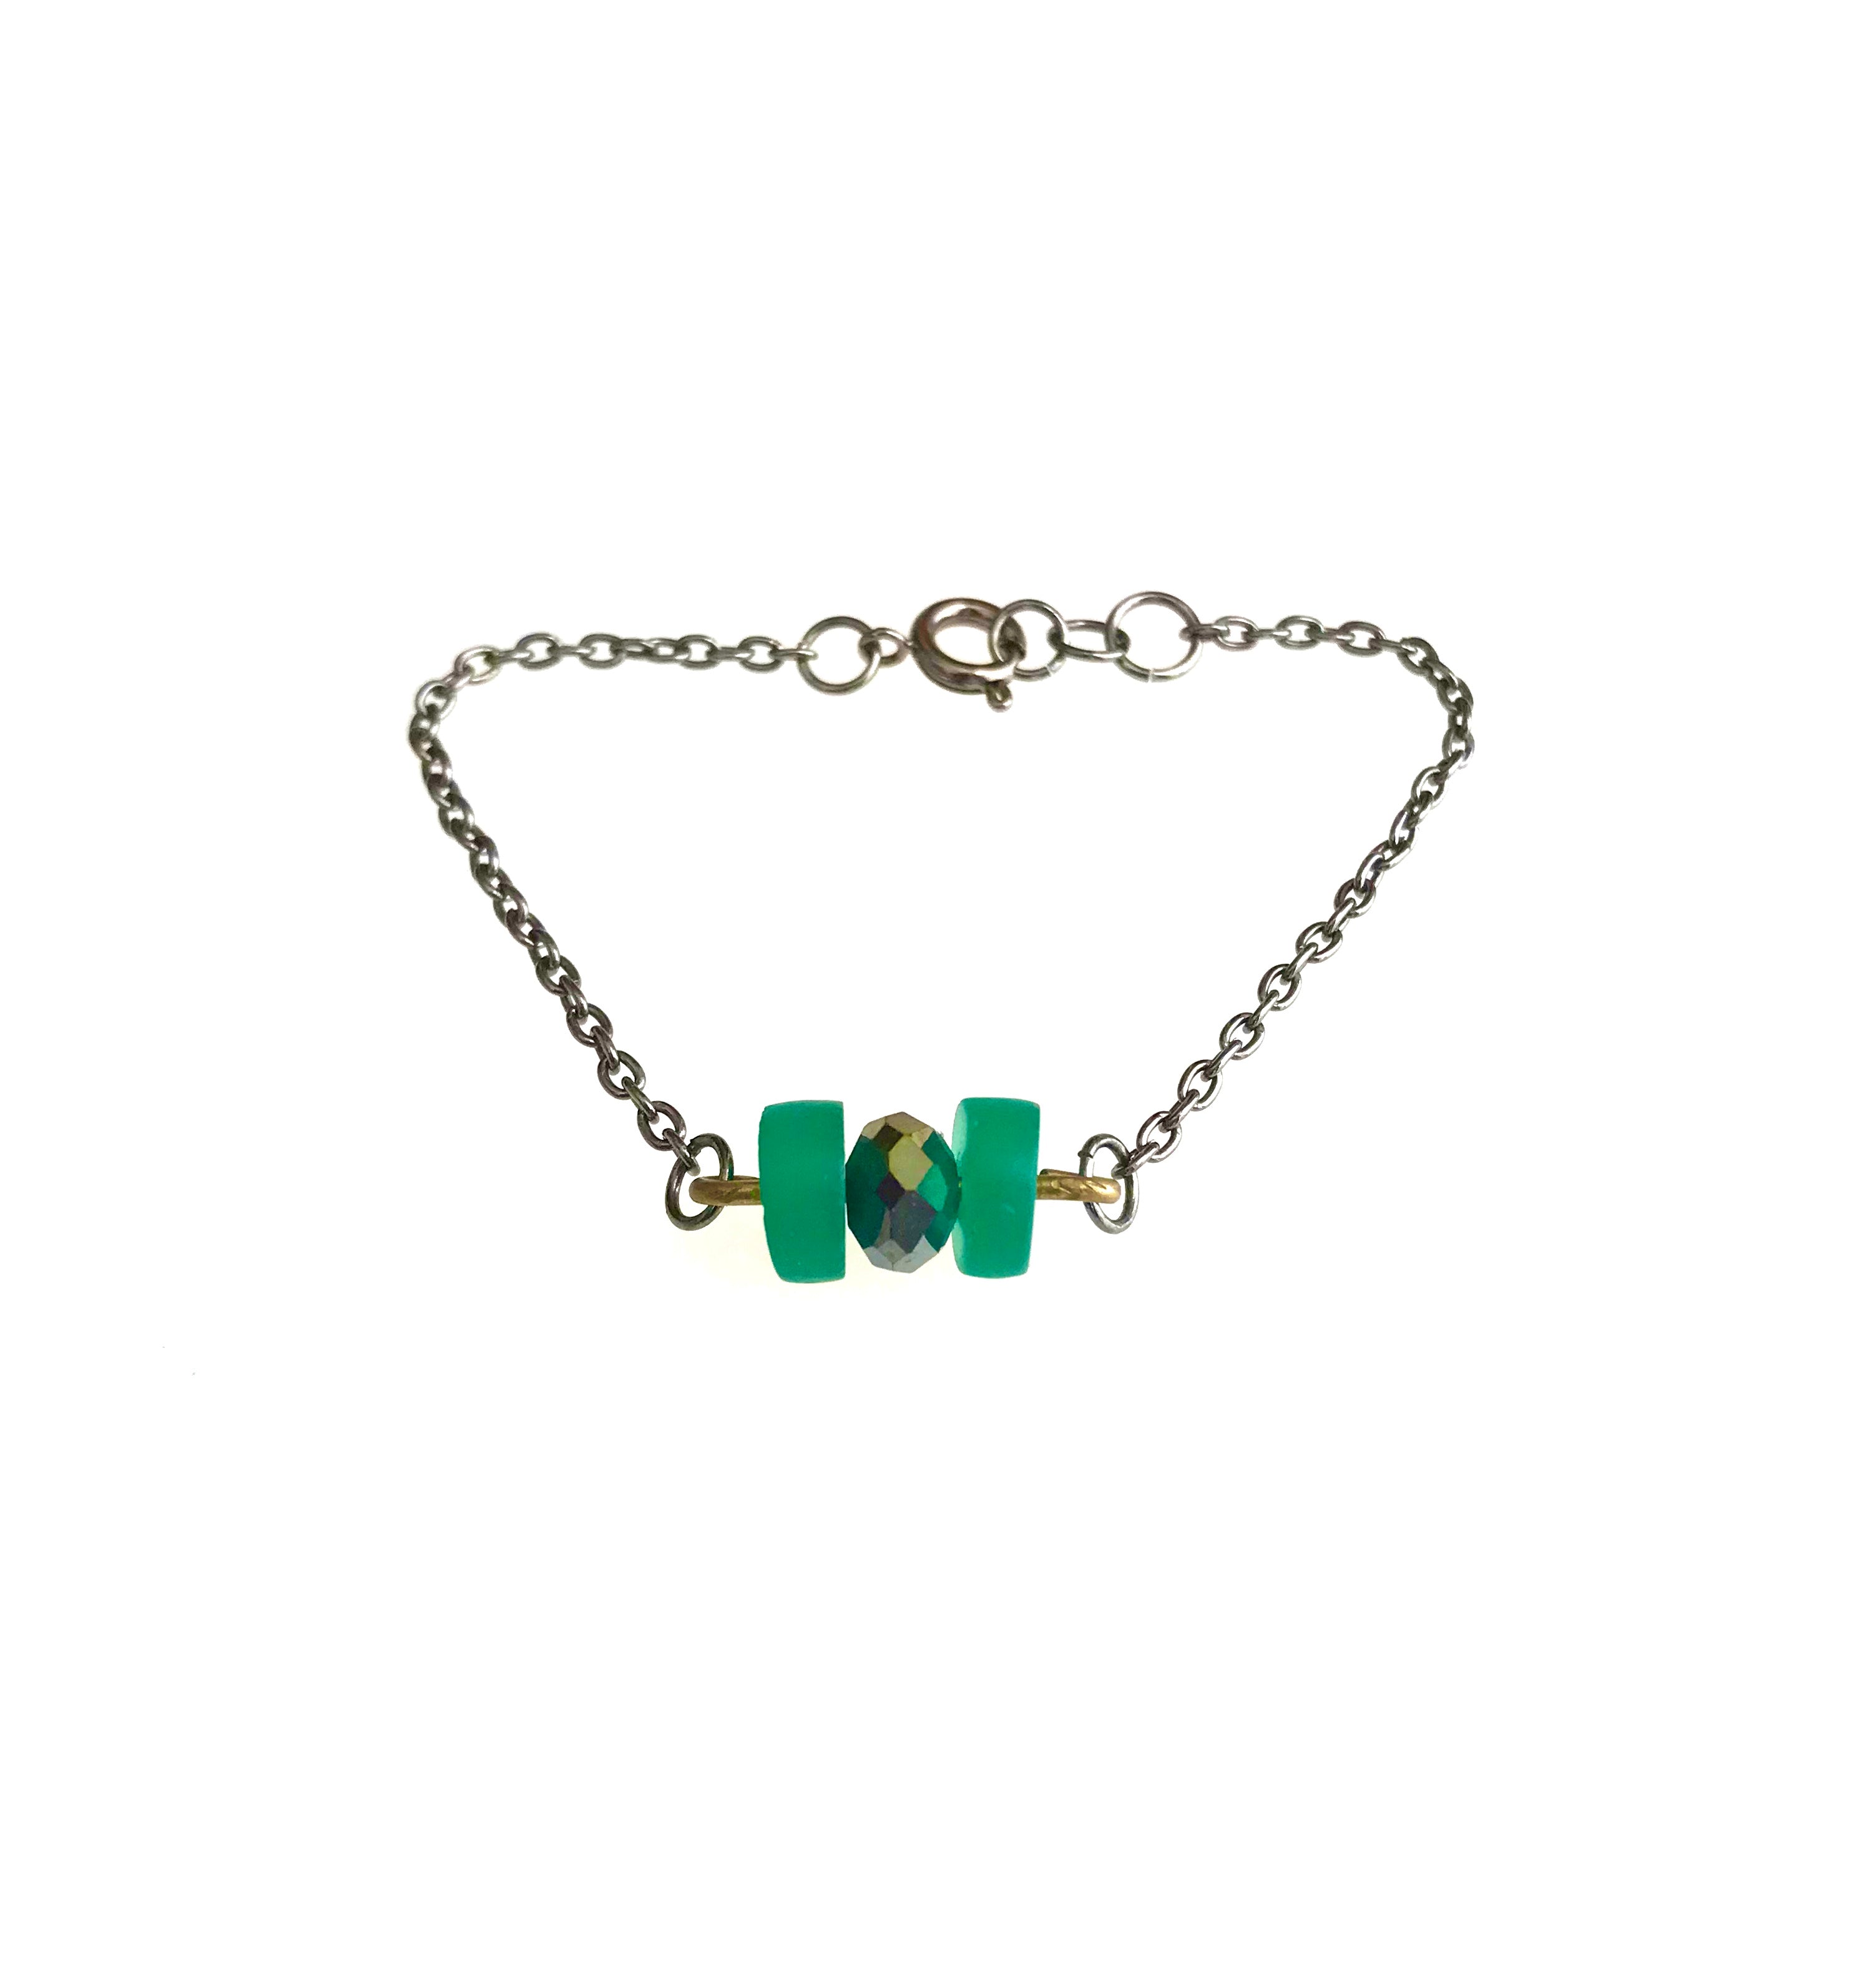 Green-eyed girl bracelet